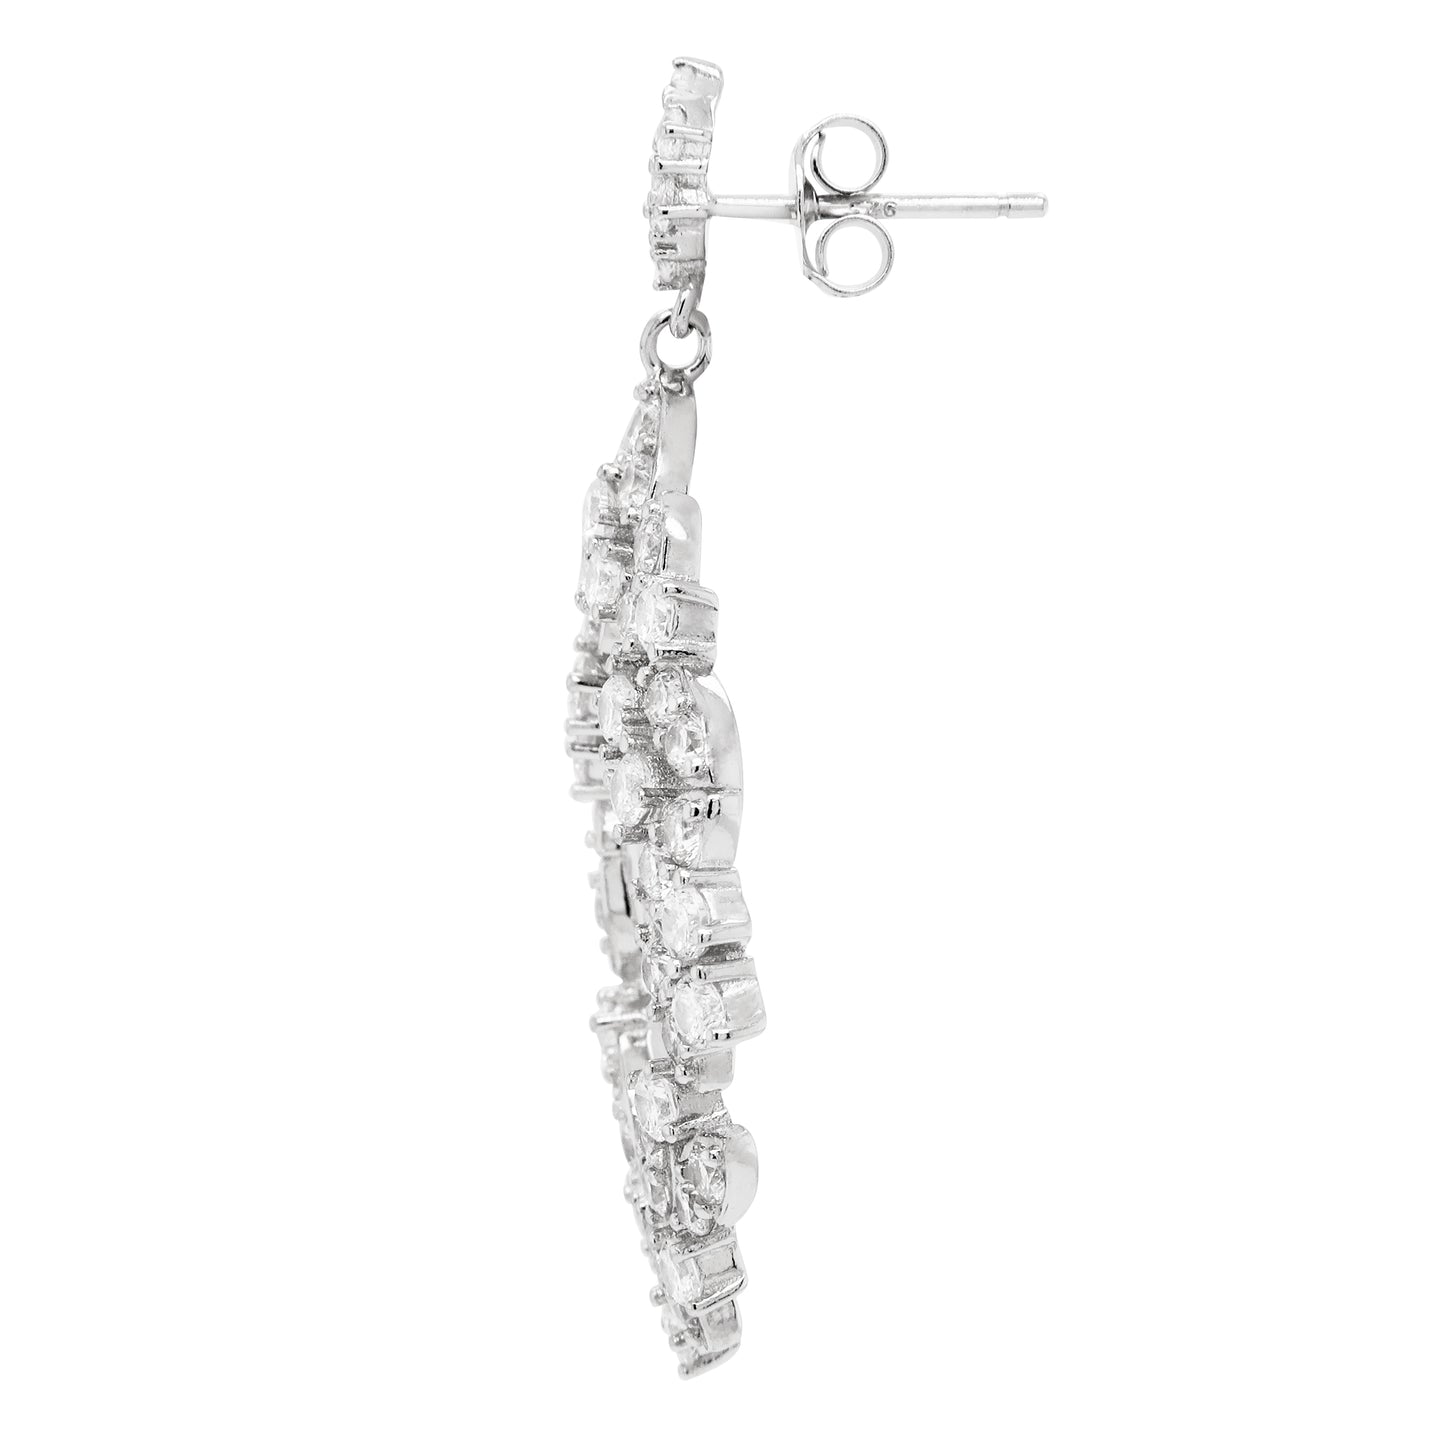 Rhodium Plated Sterling Silver, White CZ Open Teardrop Clip On Earrings - HK Jewels